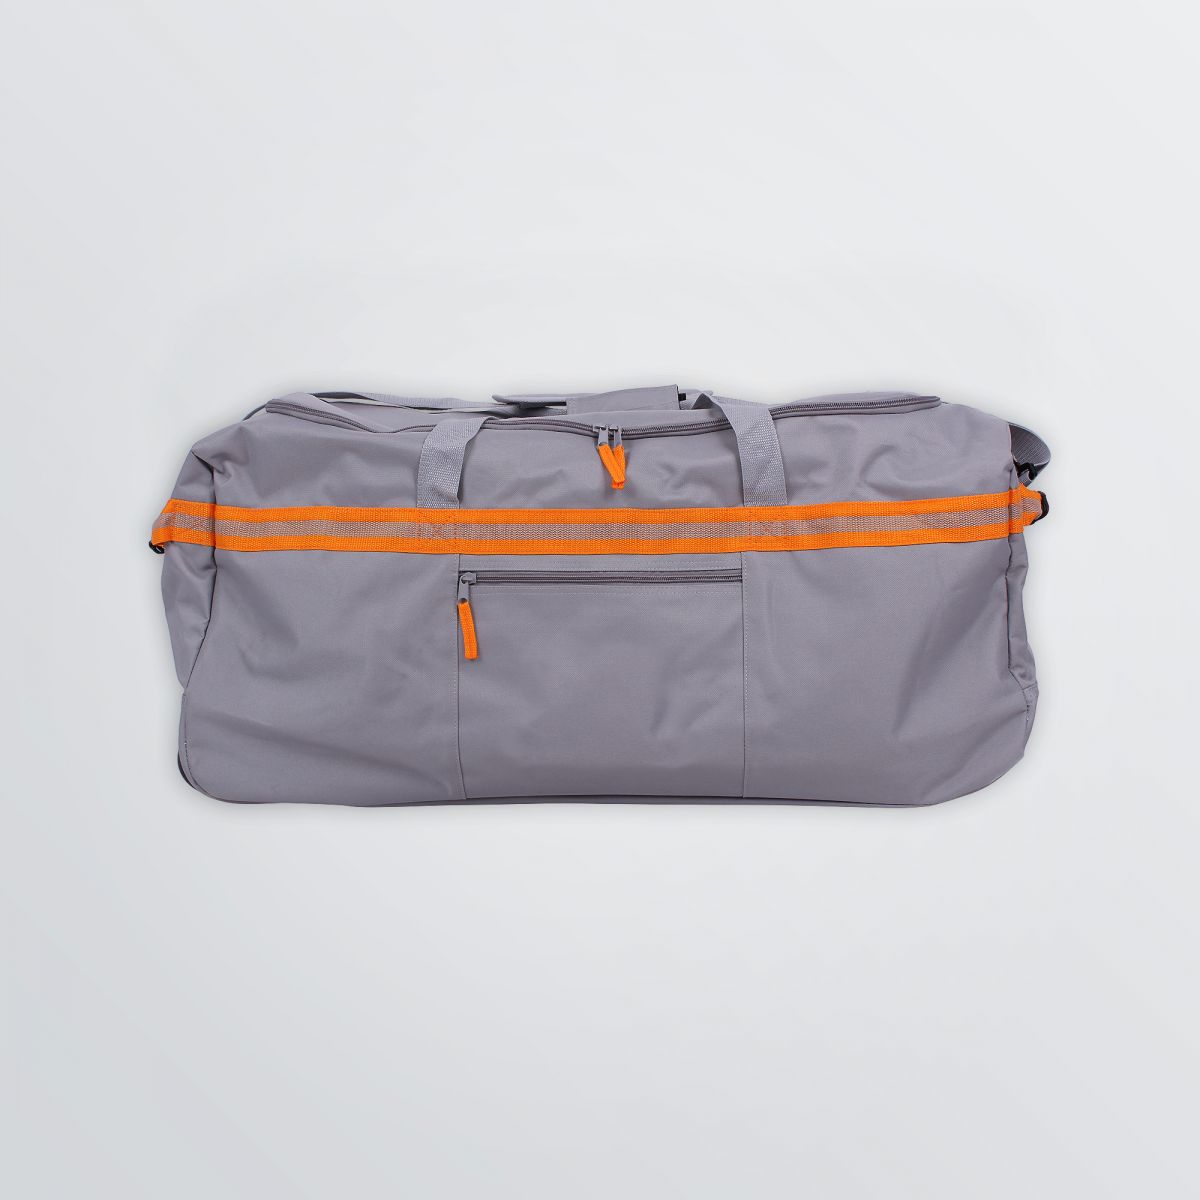 Bedruckbare Tasche Wheelie für Reisen - Produktbeispiel grau-orange